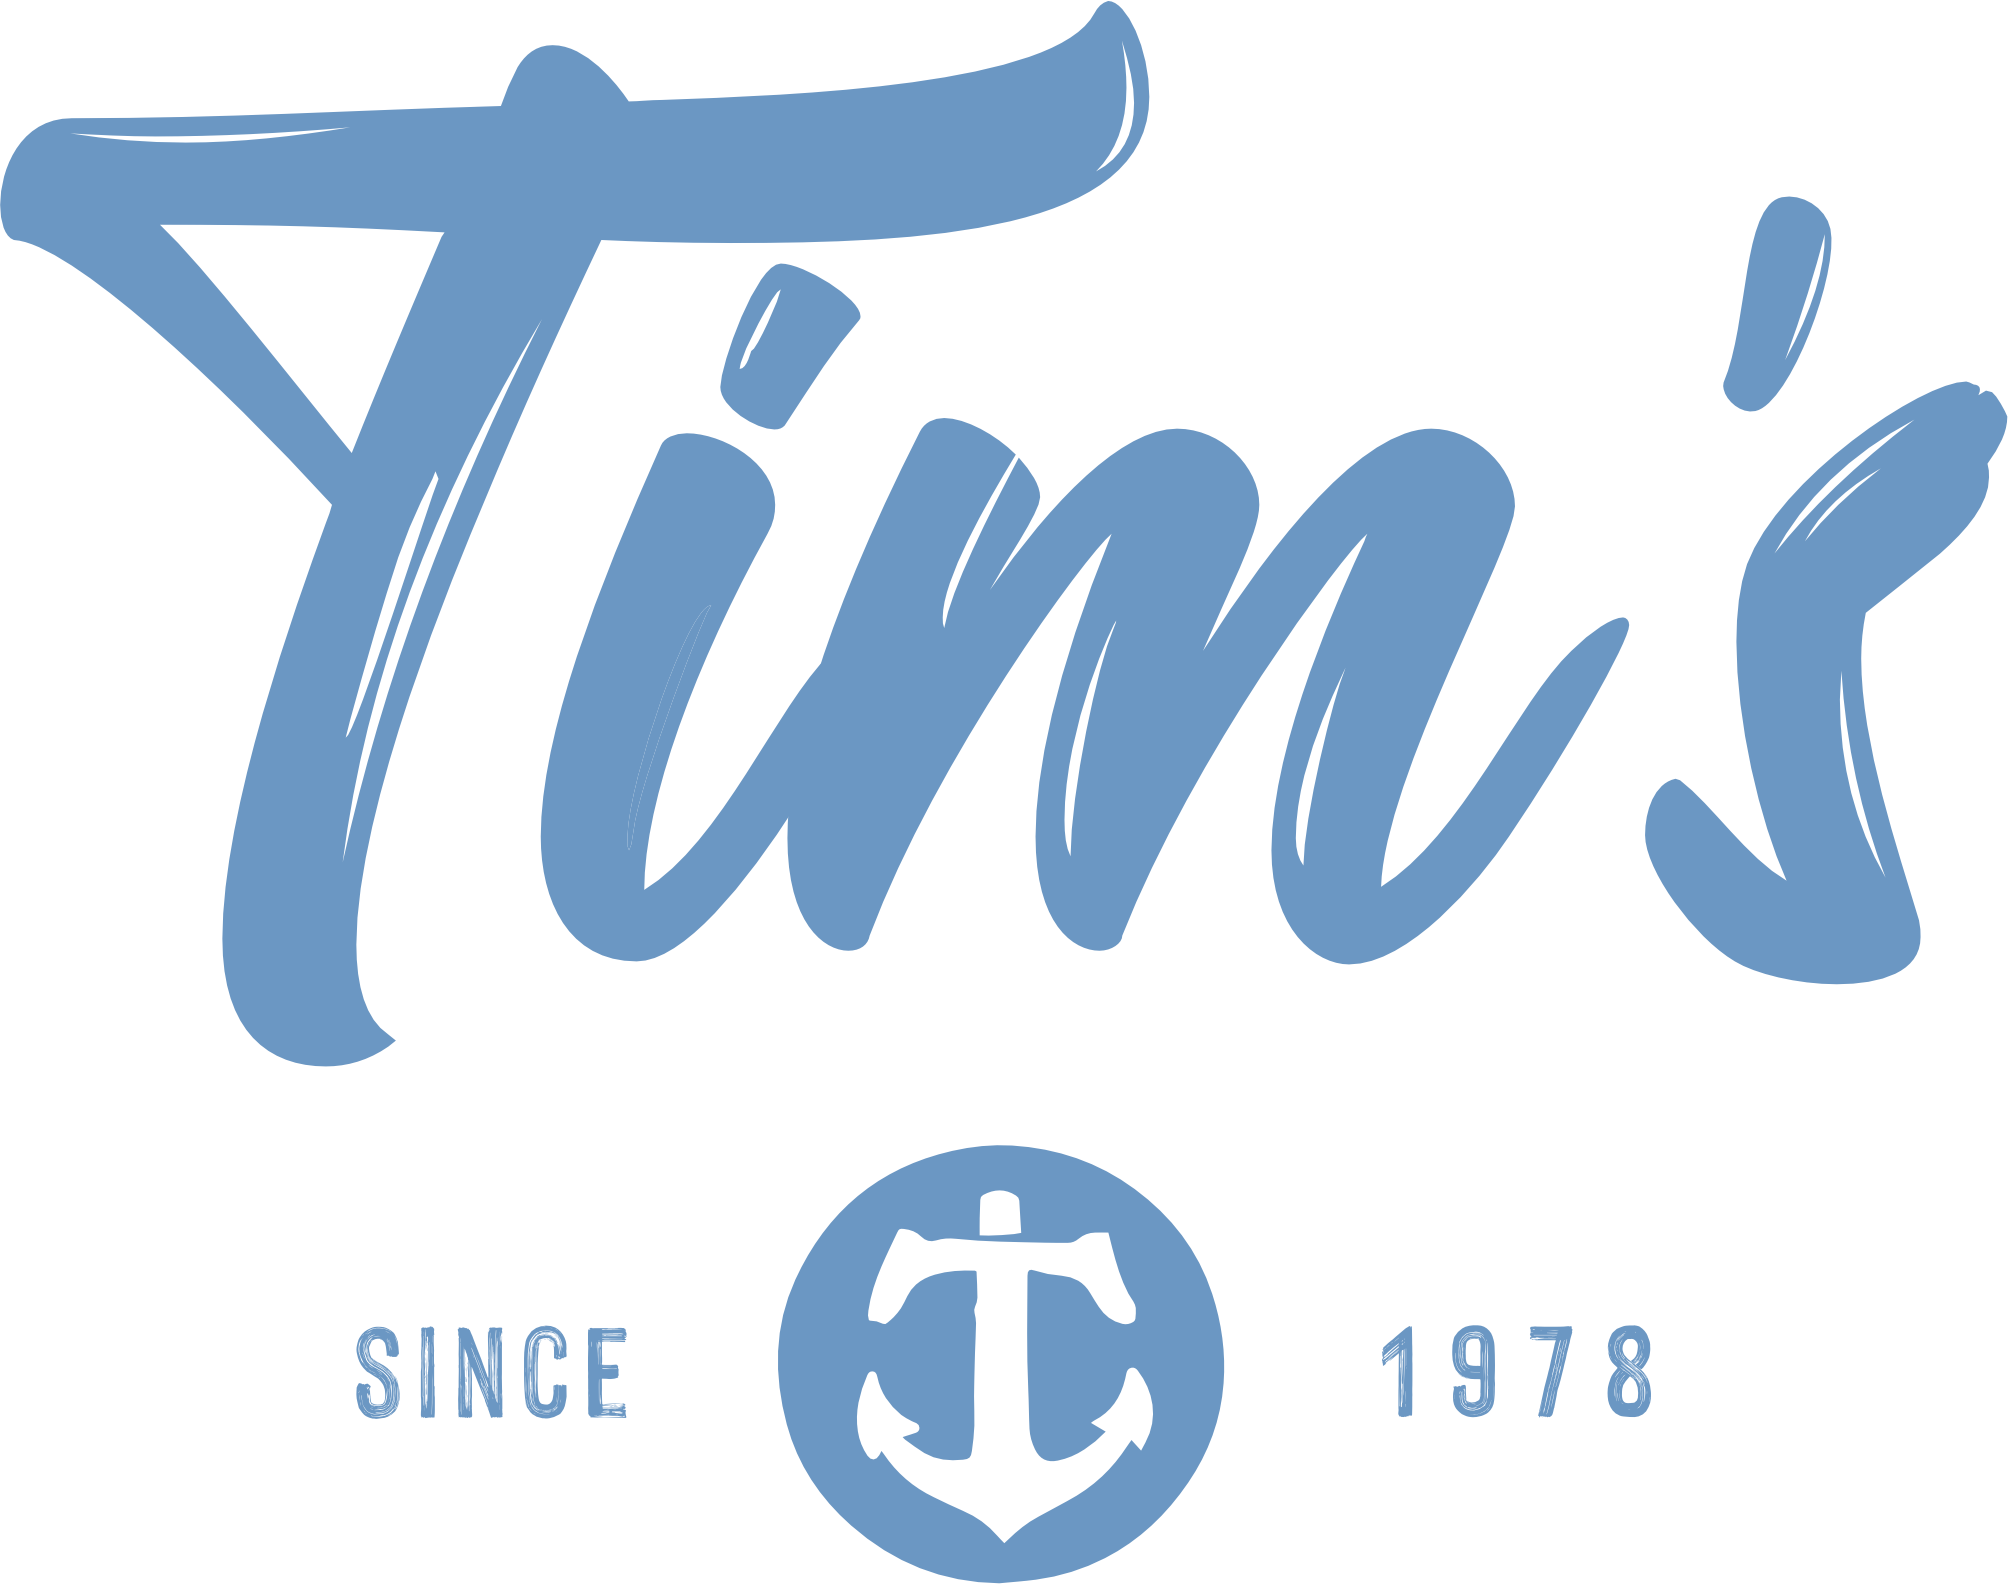 Tim's